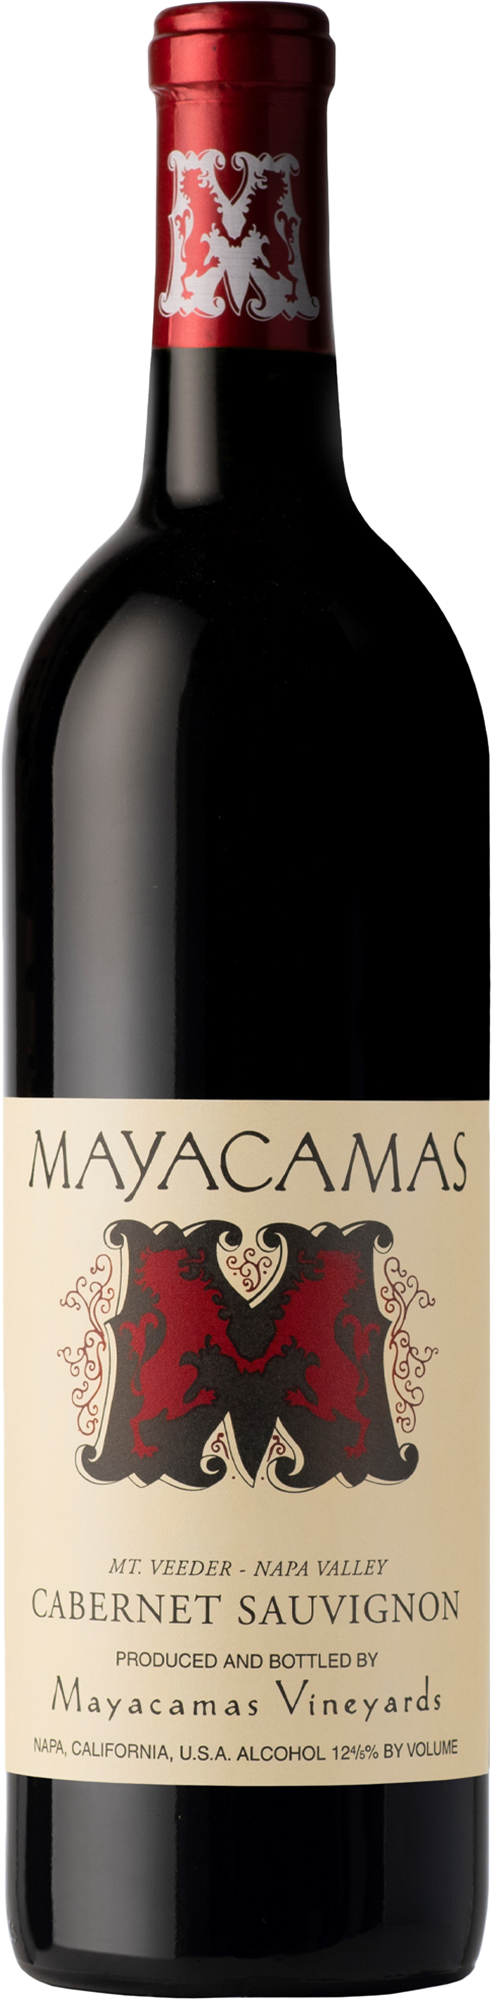 Mayacamas Vineyards Cabernet Sauvignon 2003